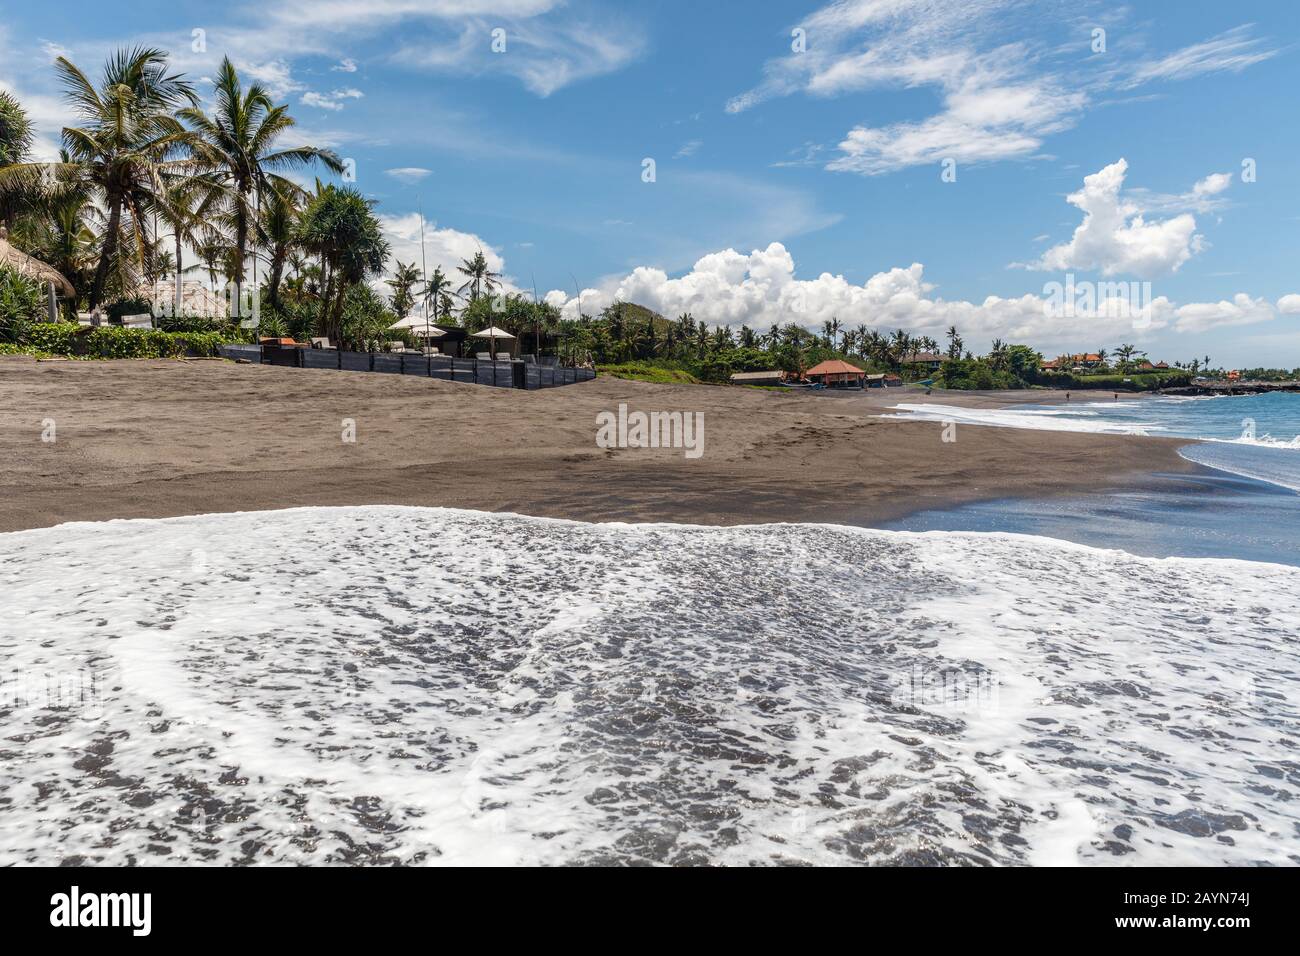 Vista De Pantai Babadan (Playa Babadan), Canggu, Bali, Indonesia. Arena negra volcánica, olas del océano, palmeras. Foto de stock